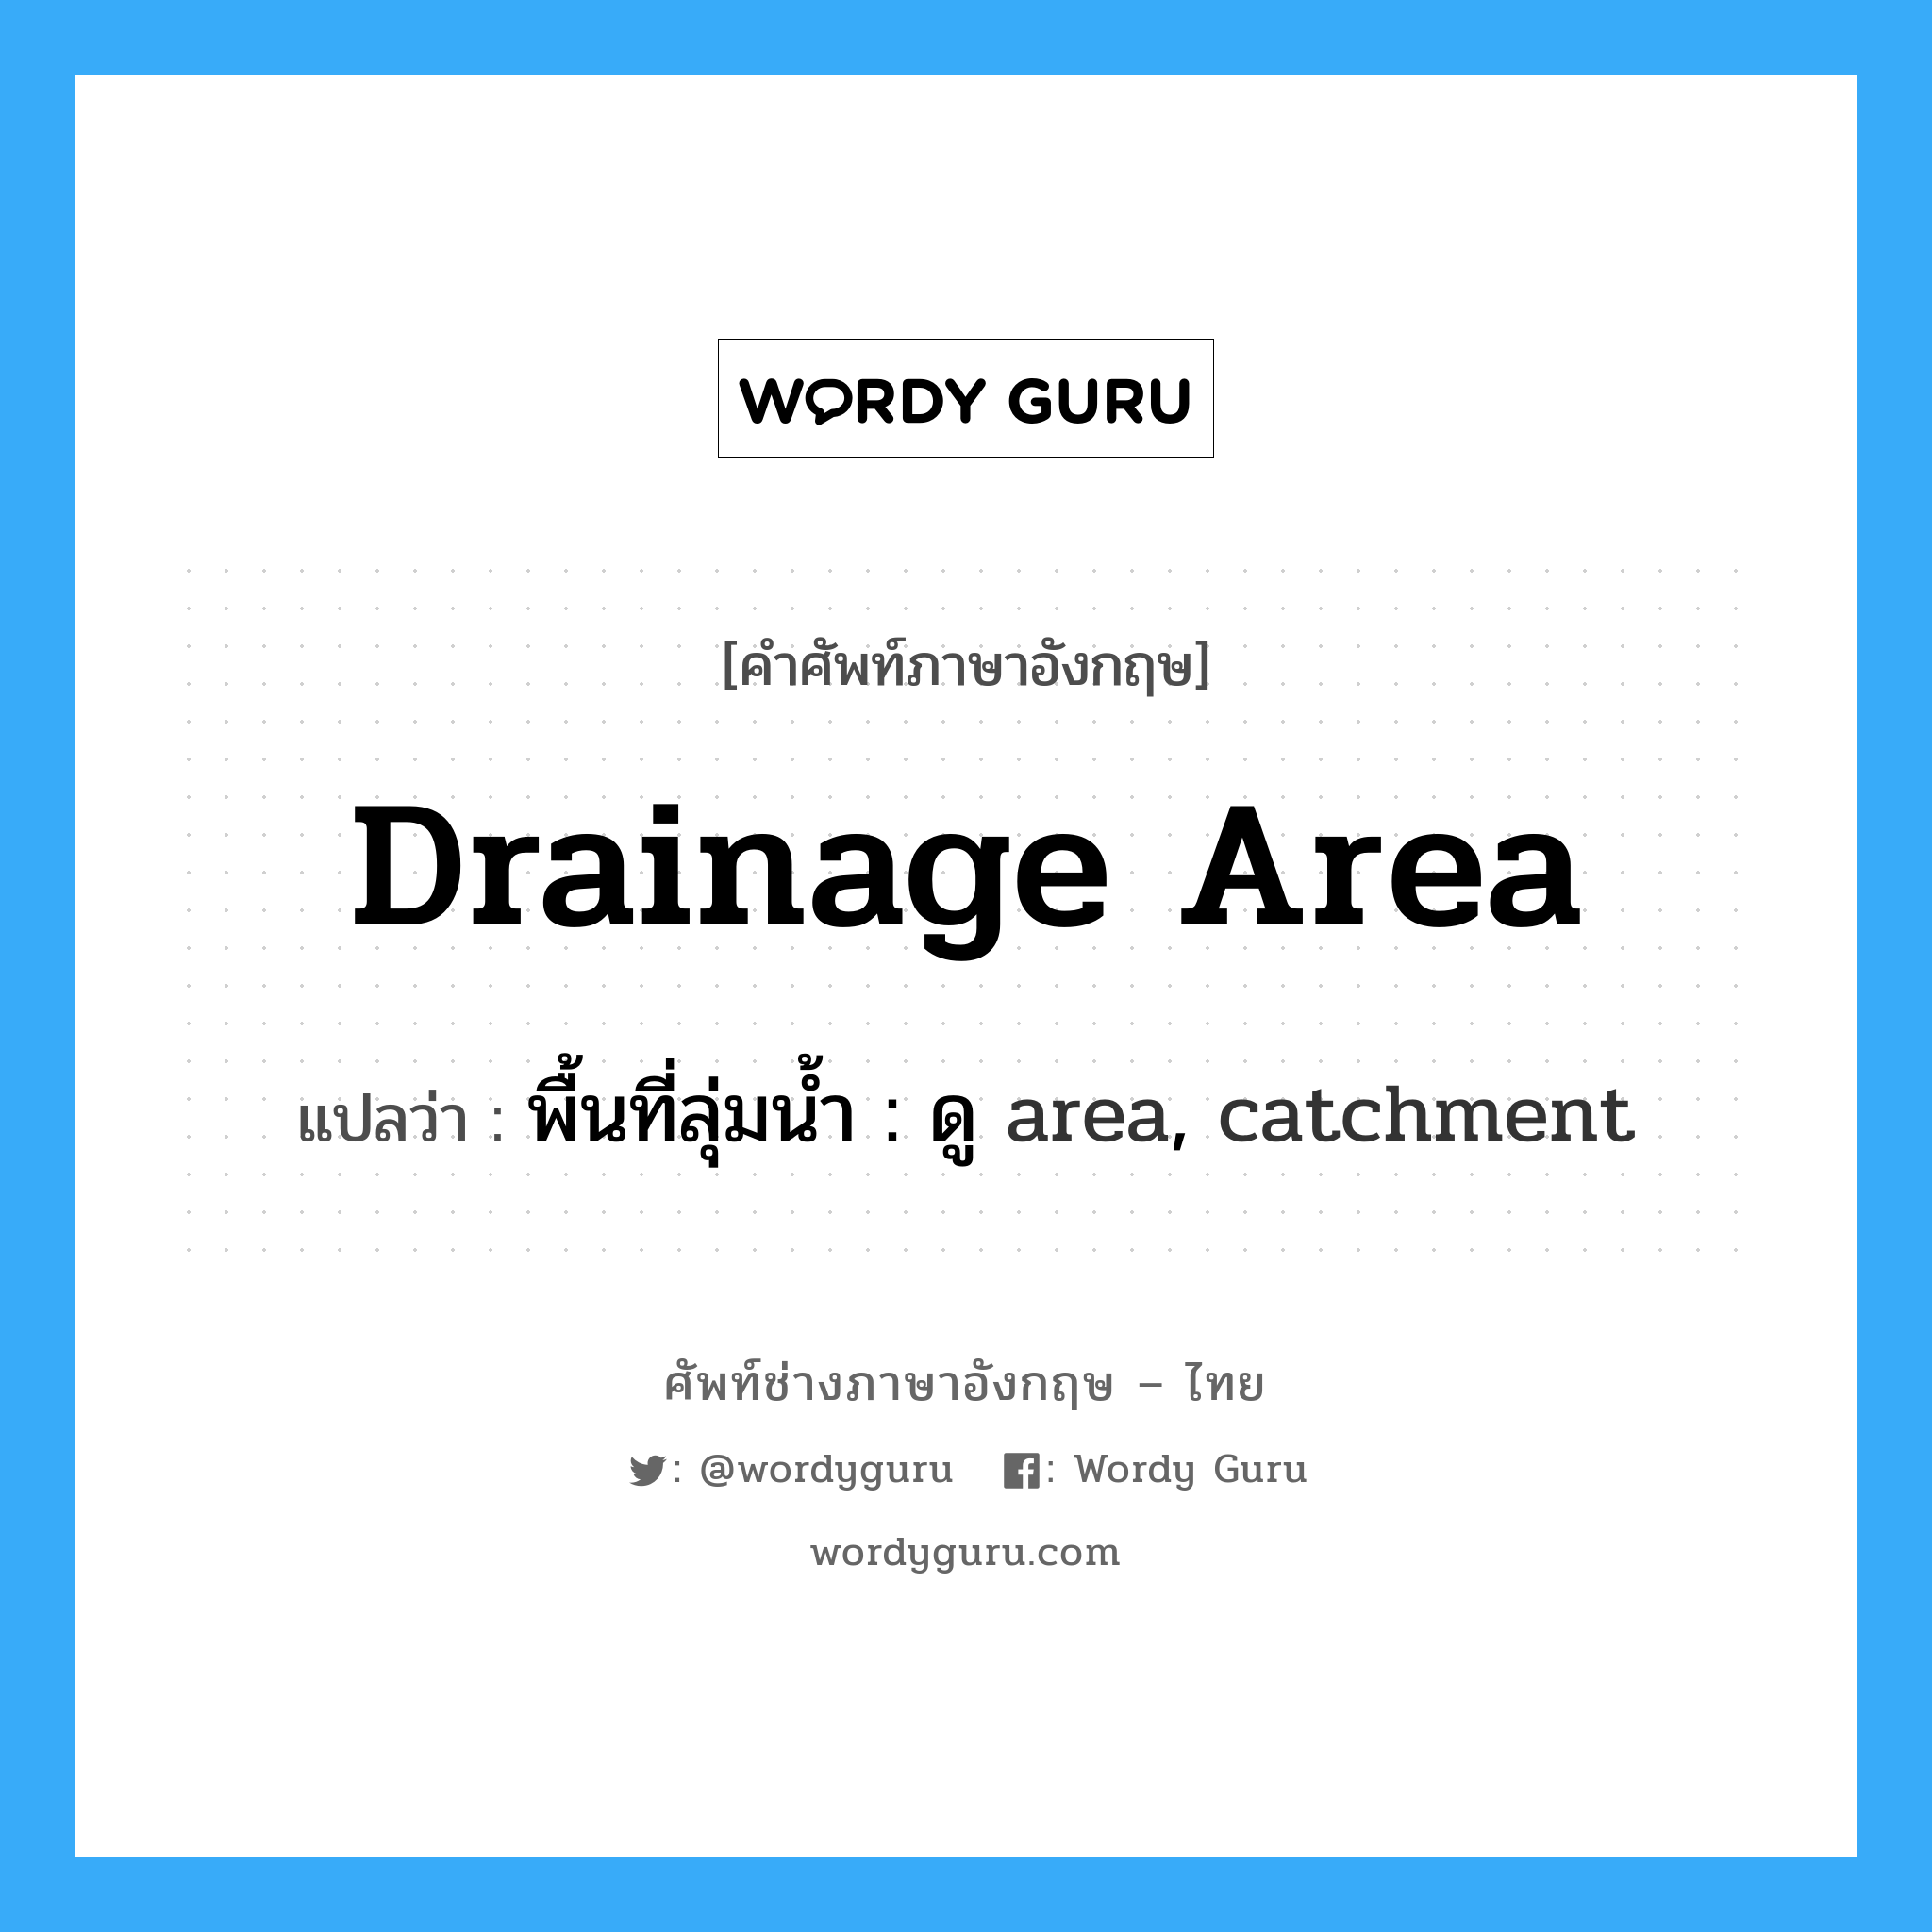 พื้นที่ลุ่มน้ำ : ดู area, catchment ภาษาอังกฤษ?, คำศัพท์ช่างภาษาอังกฤษ - ไทย พื้นที่ลุ่มน้ำ : ดู area, catchment คำศัพท์ภาษาอังกฤษ พื้นที่ลุ่มน้ำ : ดู area, catchment แปลว่า drainage area